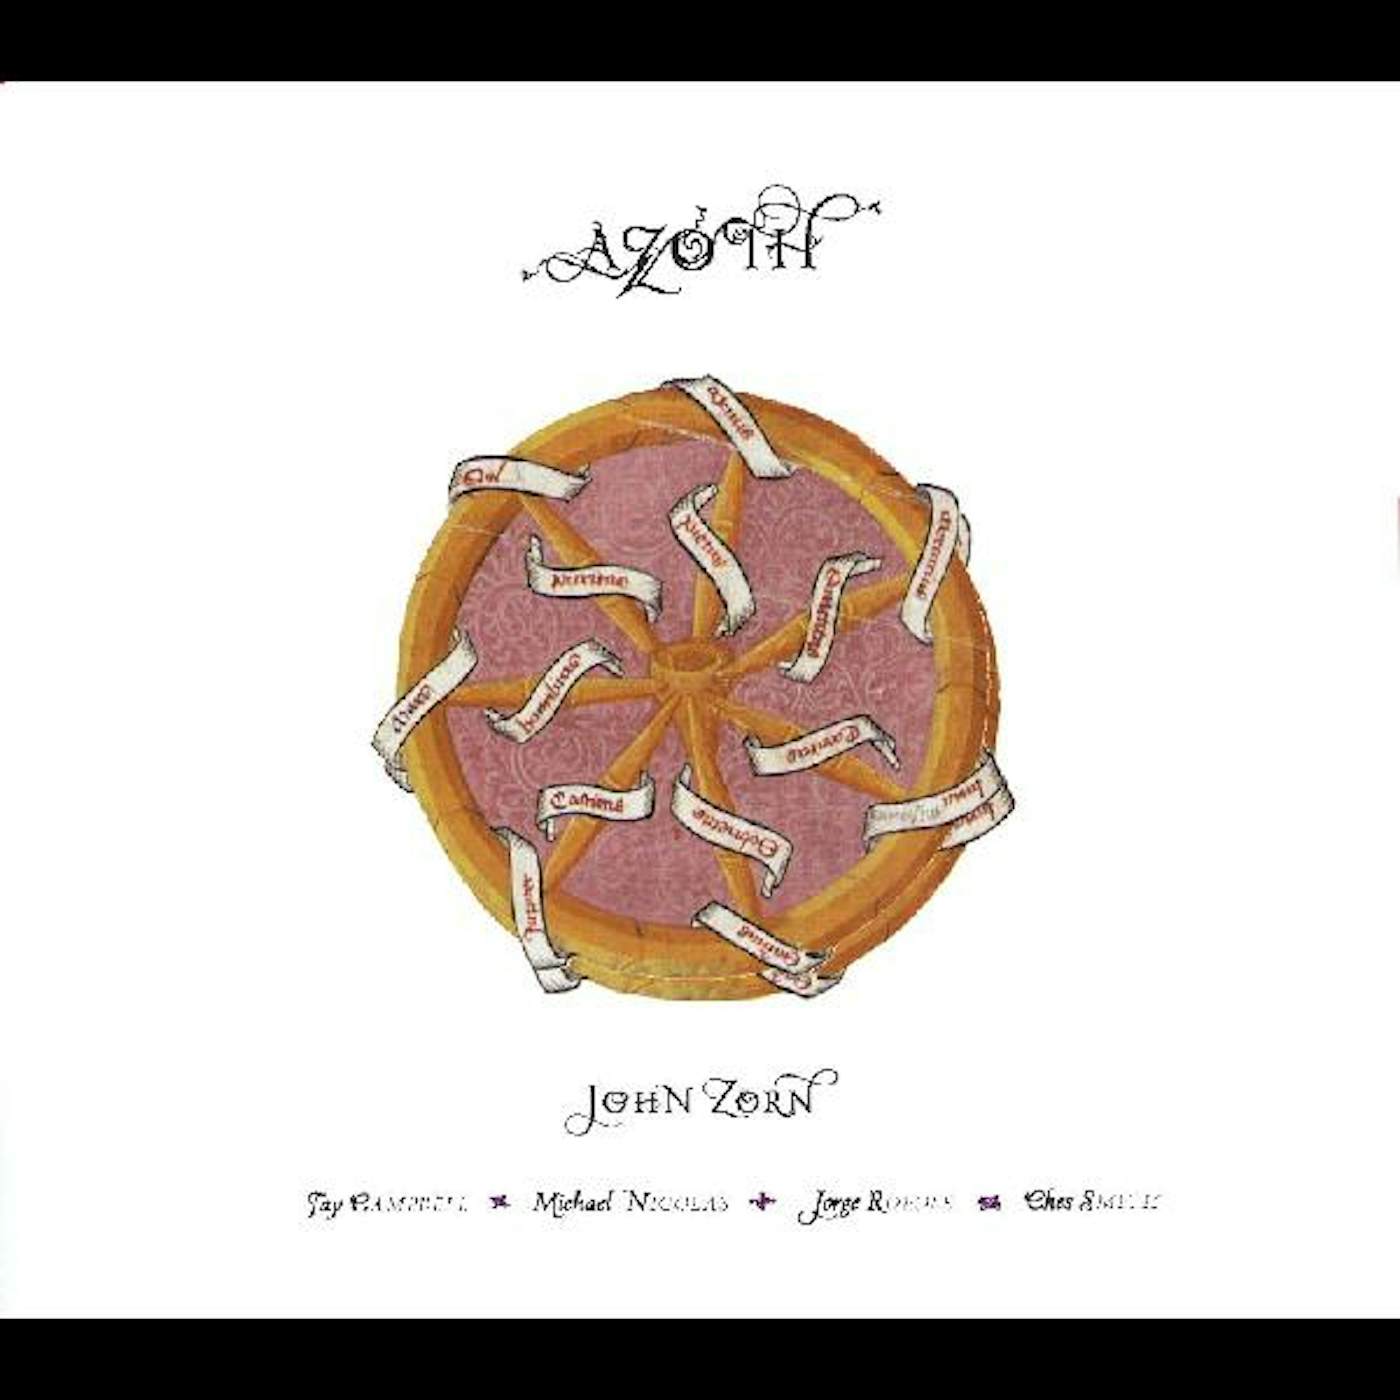 John Zorn 16140 AZOTH CD